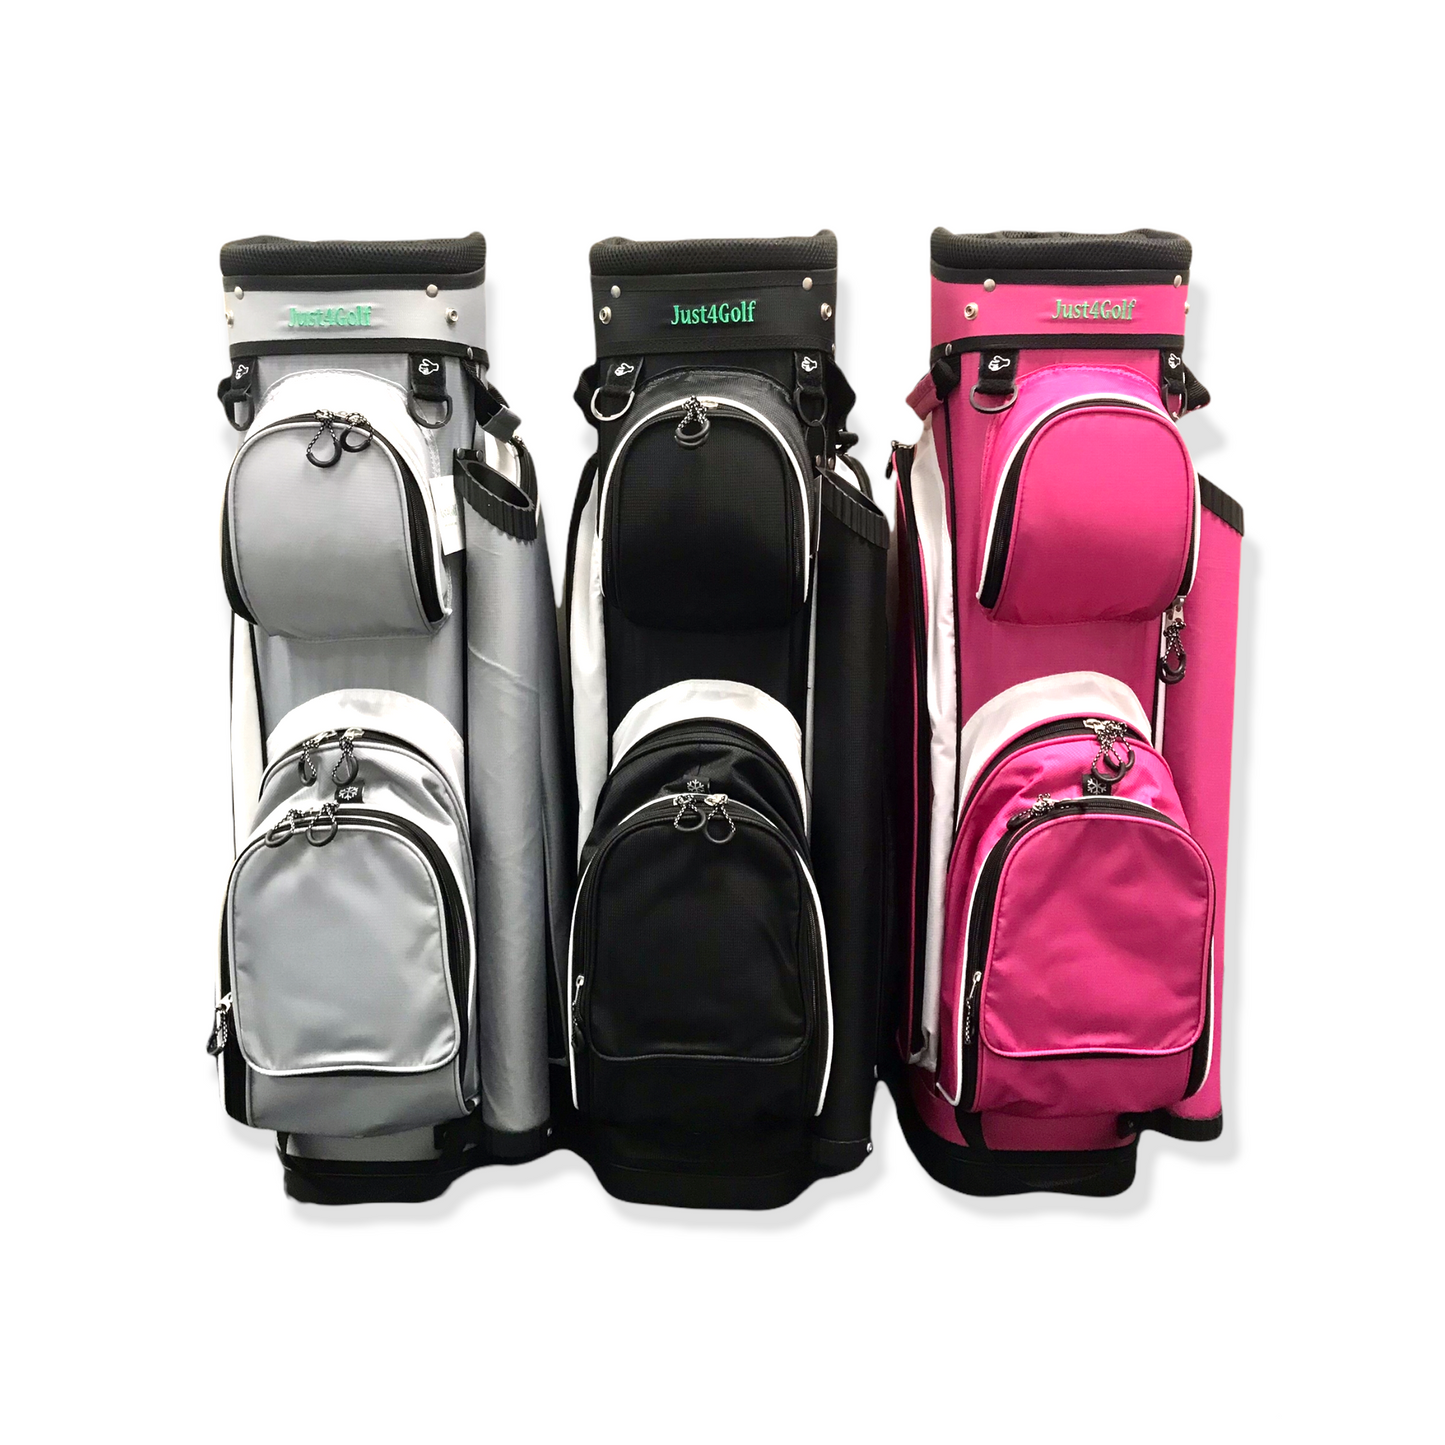 Golf Bag Pink / Cart Size - New!